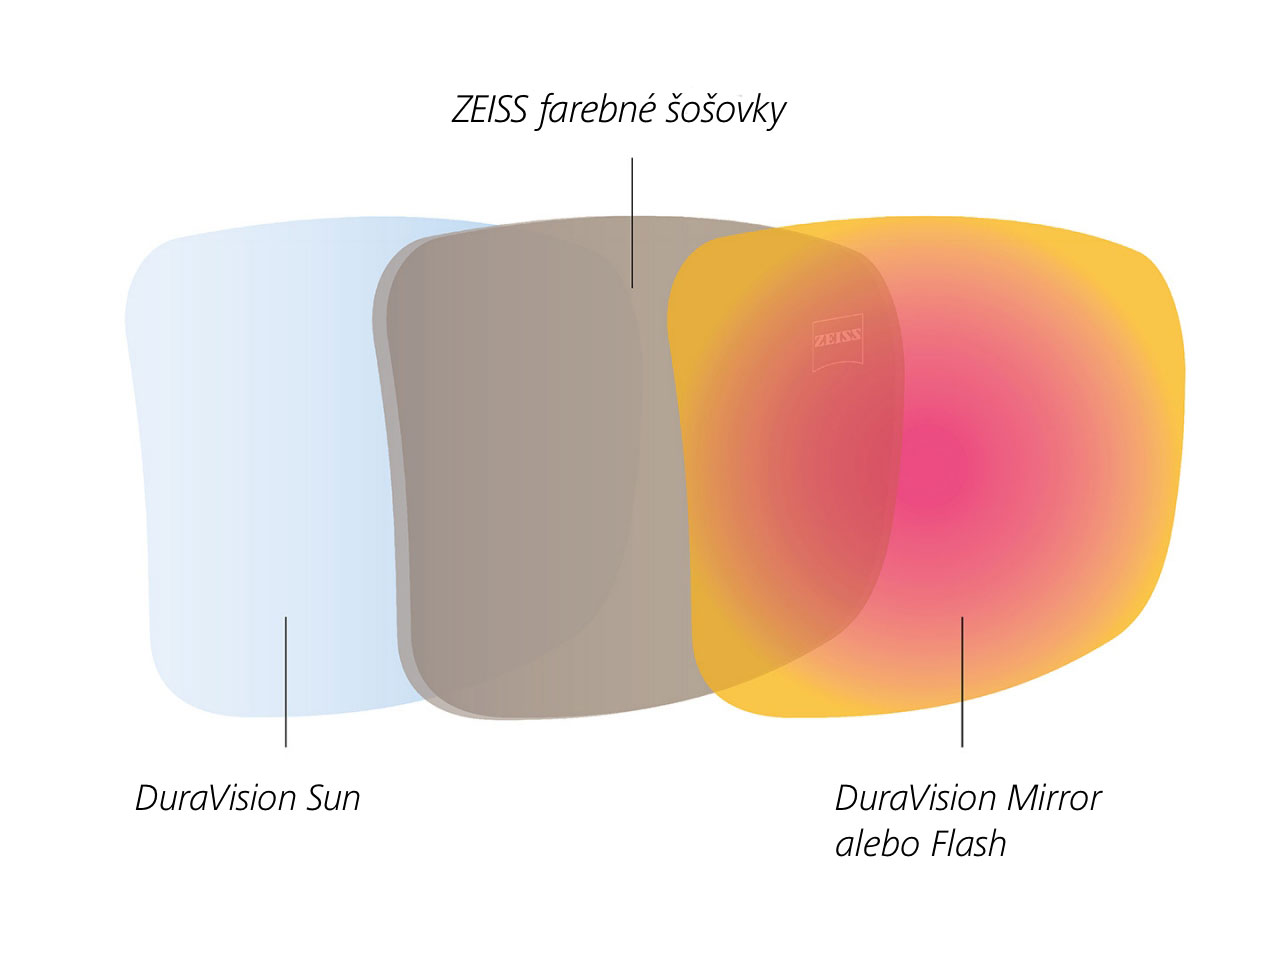 Ilustrácia tónovanej šošovky ZEISS so zadnou a prednou vrstvou šošovky určenou pre odraz slnečného svetla 